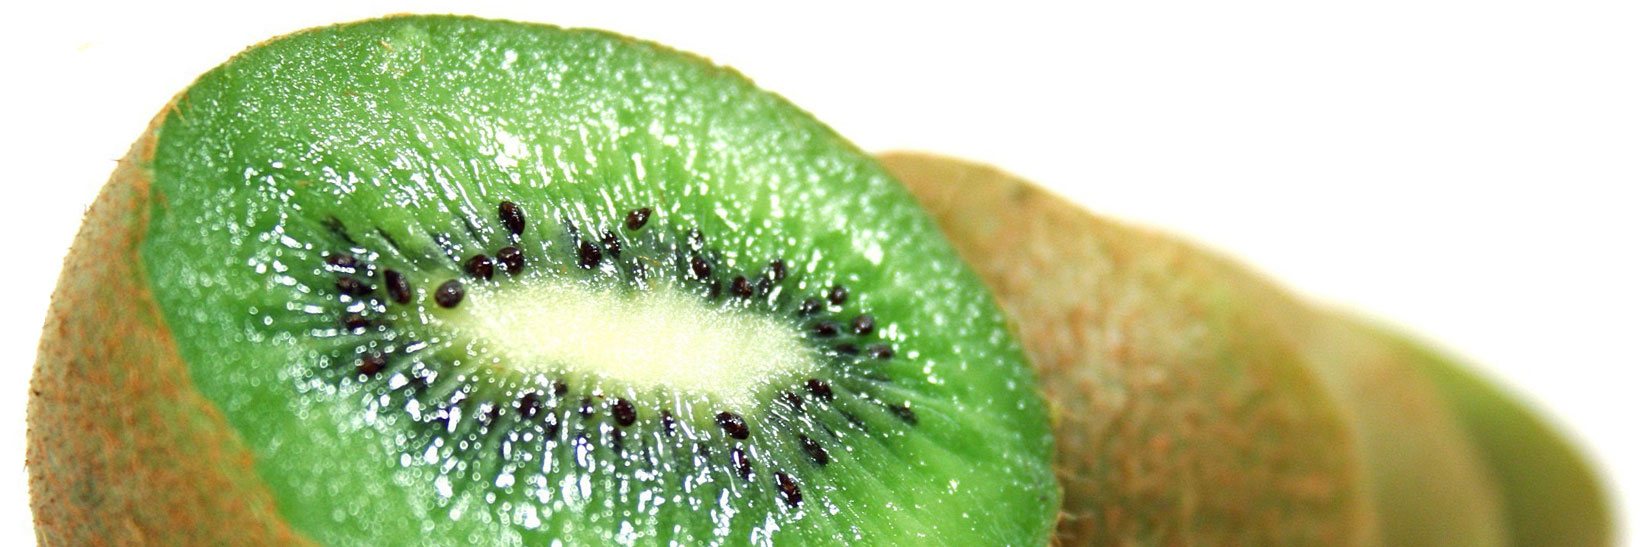 Киви. Топ-5 самых богатых витаминами фруктов и ягод